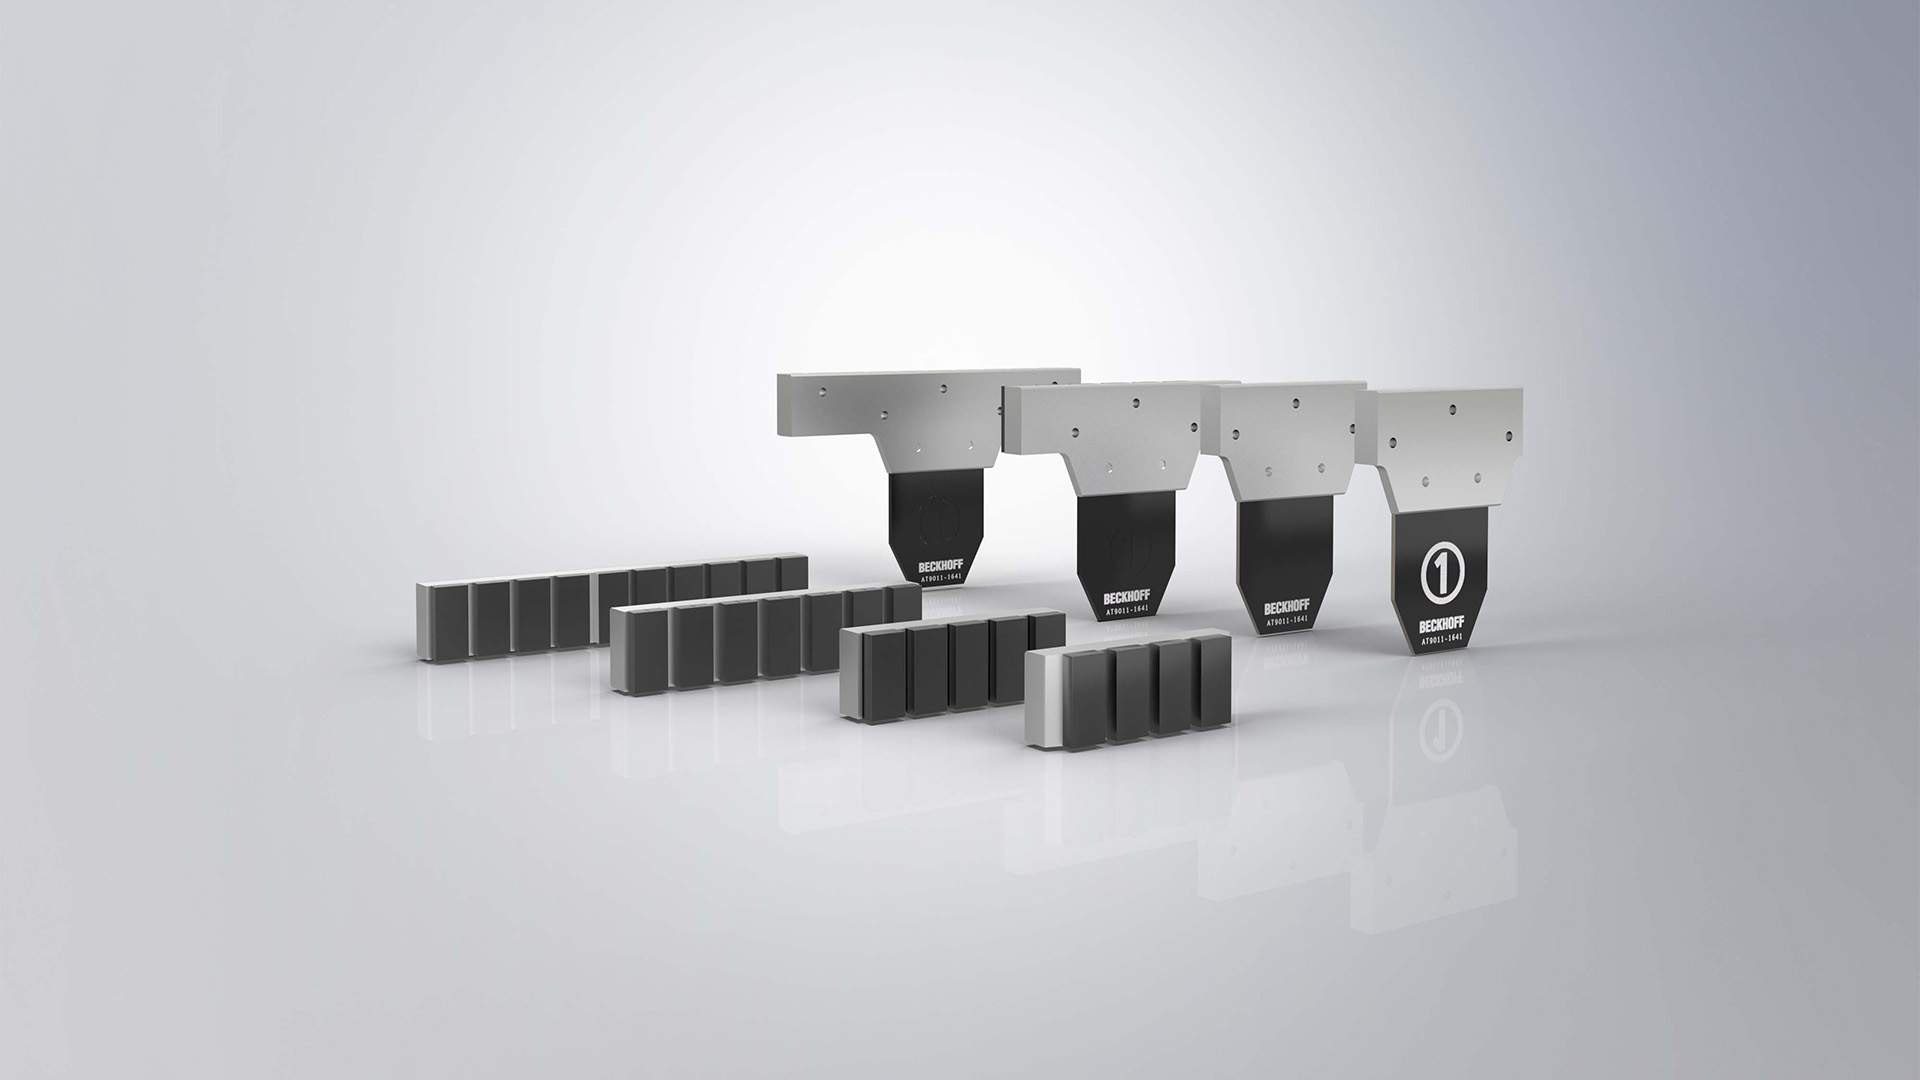 XTS-Magnetplattensets ermöglichen skalierbare Leistungsklassen und eröffnen neue Anwendungsfelder.